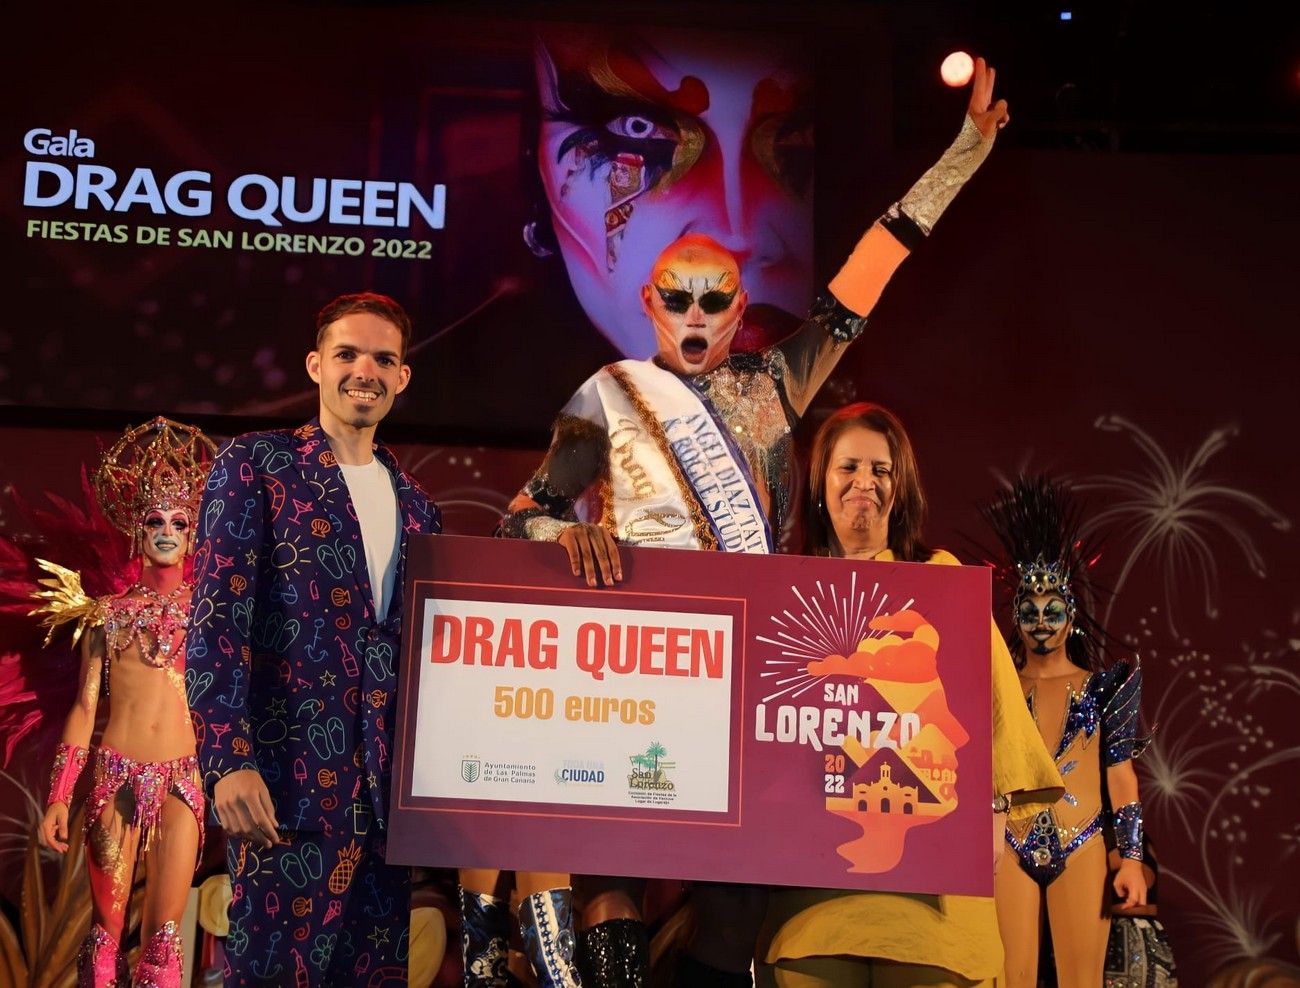 Drag Queen Fiestas de San Lorenzo 2022